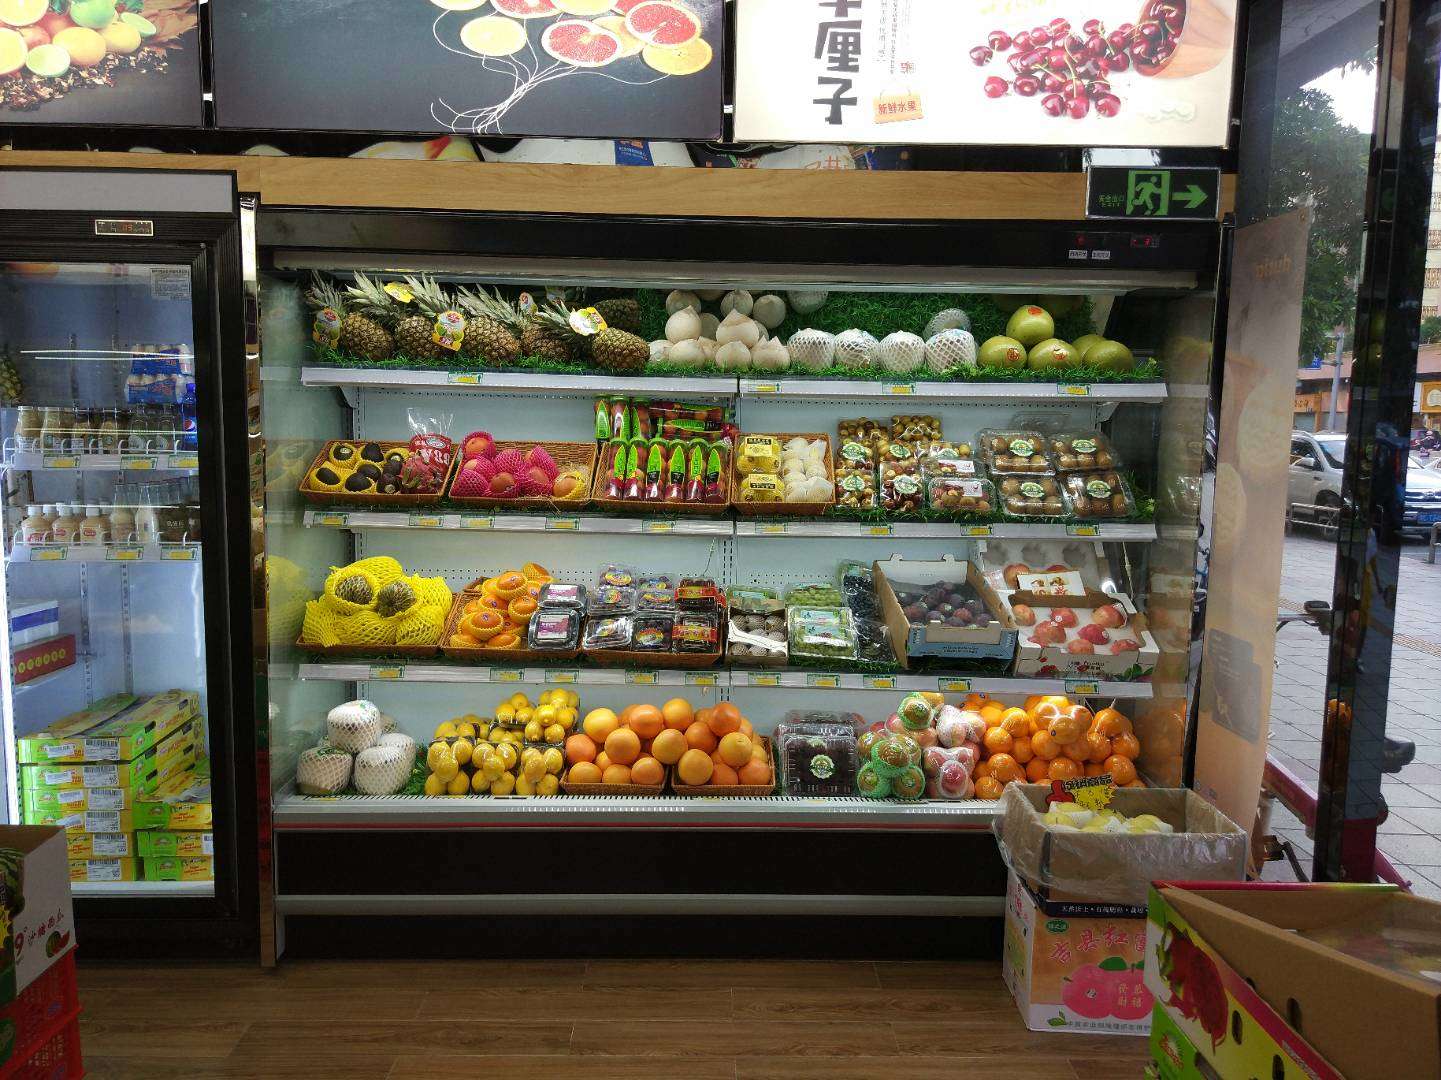 蔬菜冷藏柜 未来雪-W-FMG-12-水果保鲜柜 超市风幕柜 水果店风幕柜 商用冰箱展示柜冰柜 水果柜1